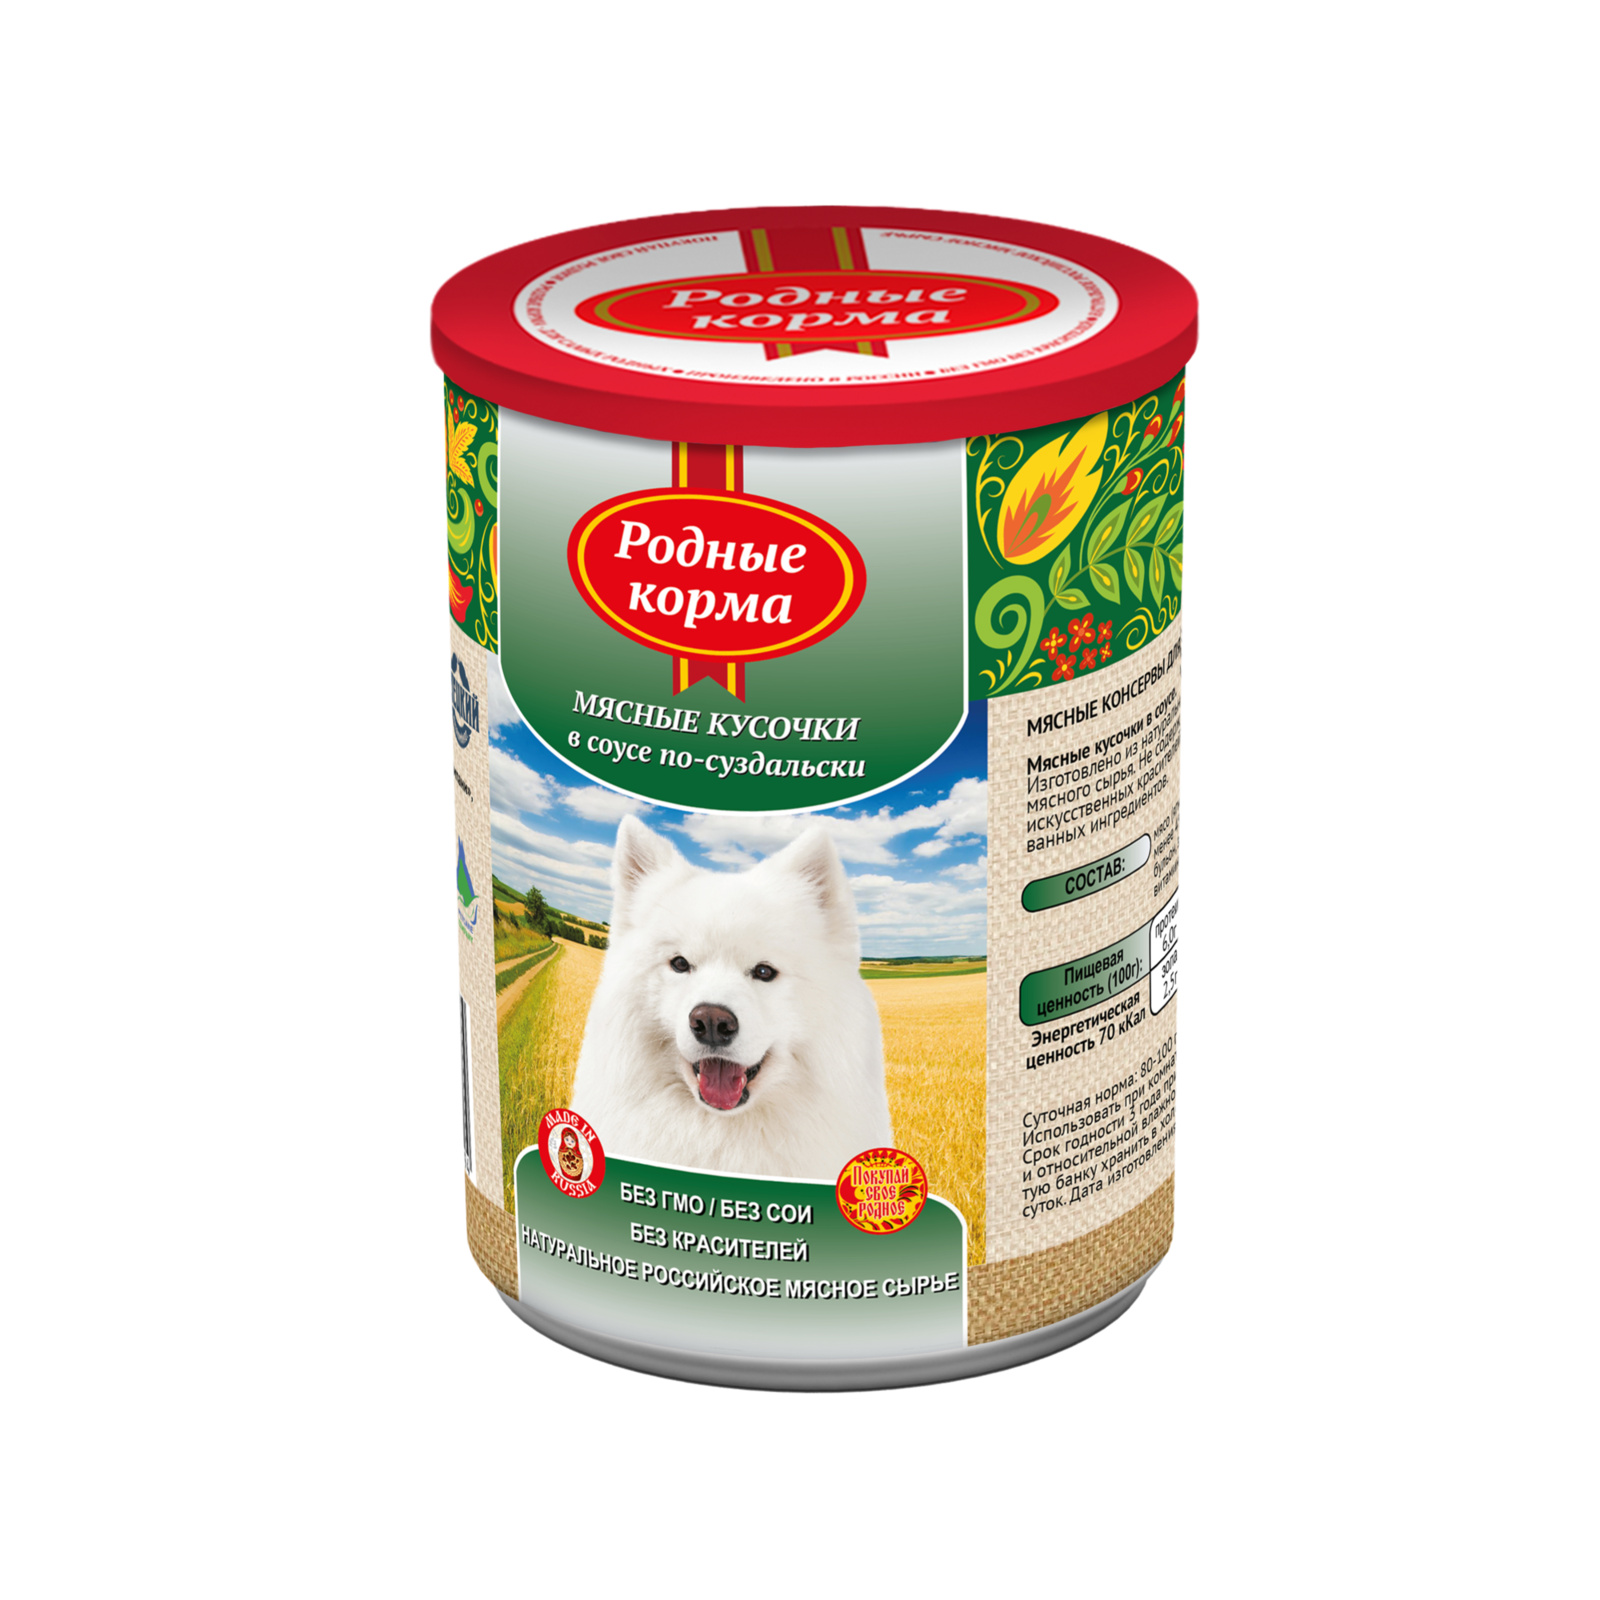 Родные корма консервы для собак мясные кусочки в соусе по-суздальски (970 г) Родные корма консервы для собак мясные кусочки в соусе по-суздальски (970 г) - фото 1